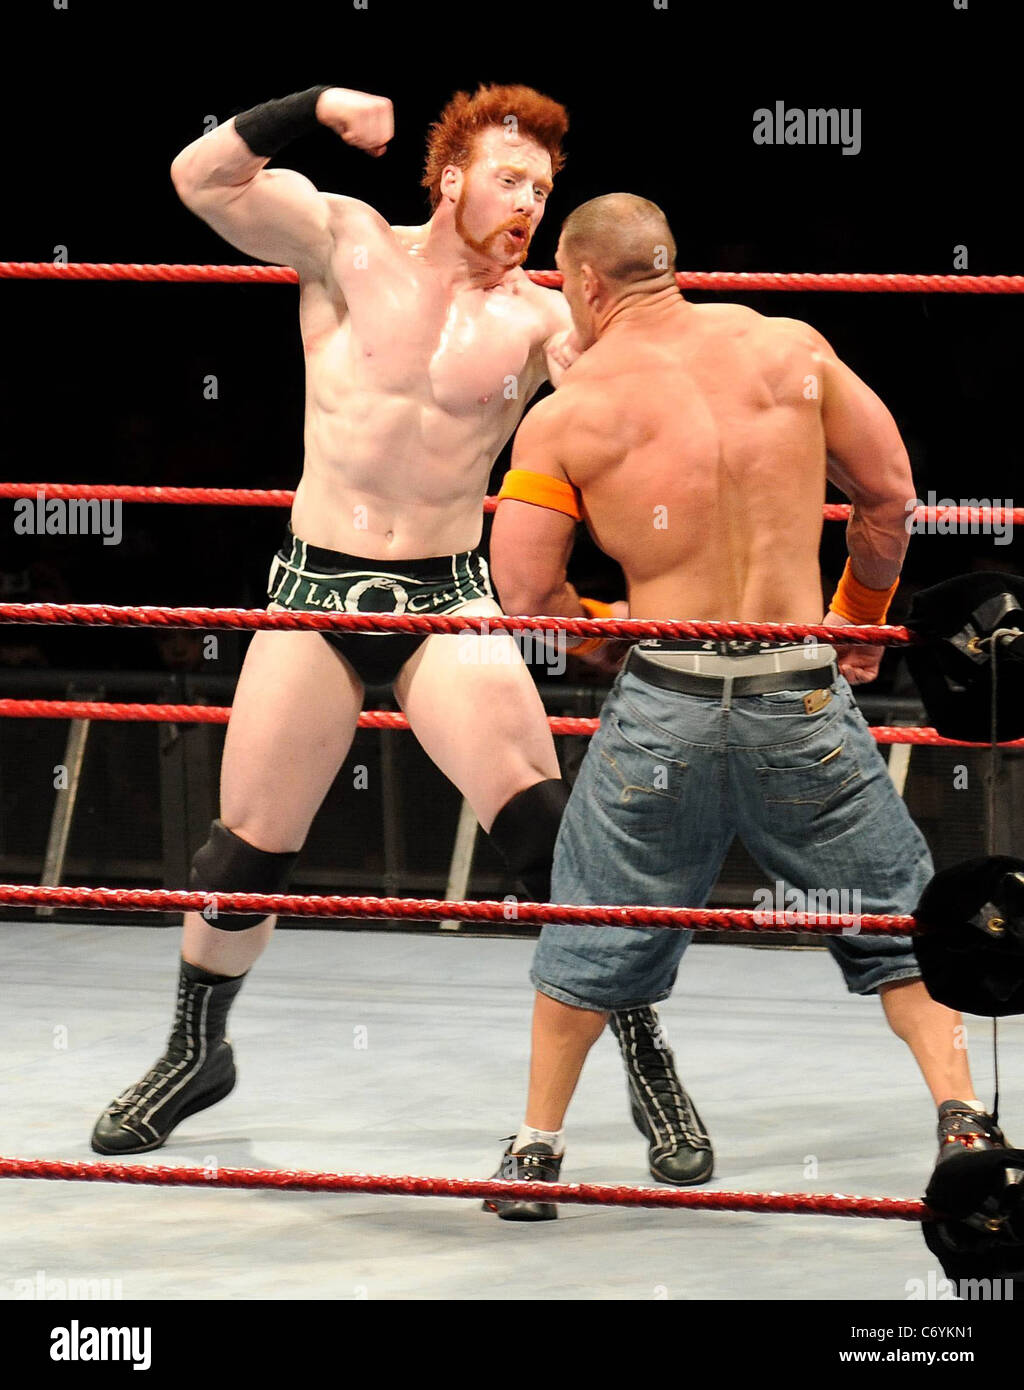 Campione WWE John Cena di fronte ex campione WWE Sheamus per la cintura del  titolo presso l'arena O2 e dopo una lunga battaglia Cena ha vinto quando  Foto stock - Alamy